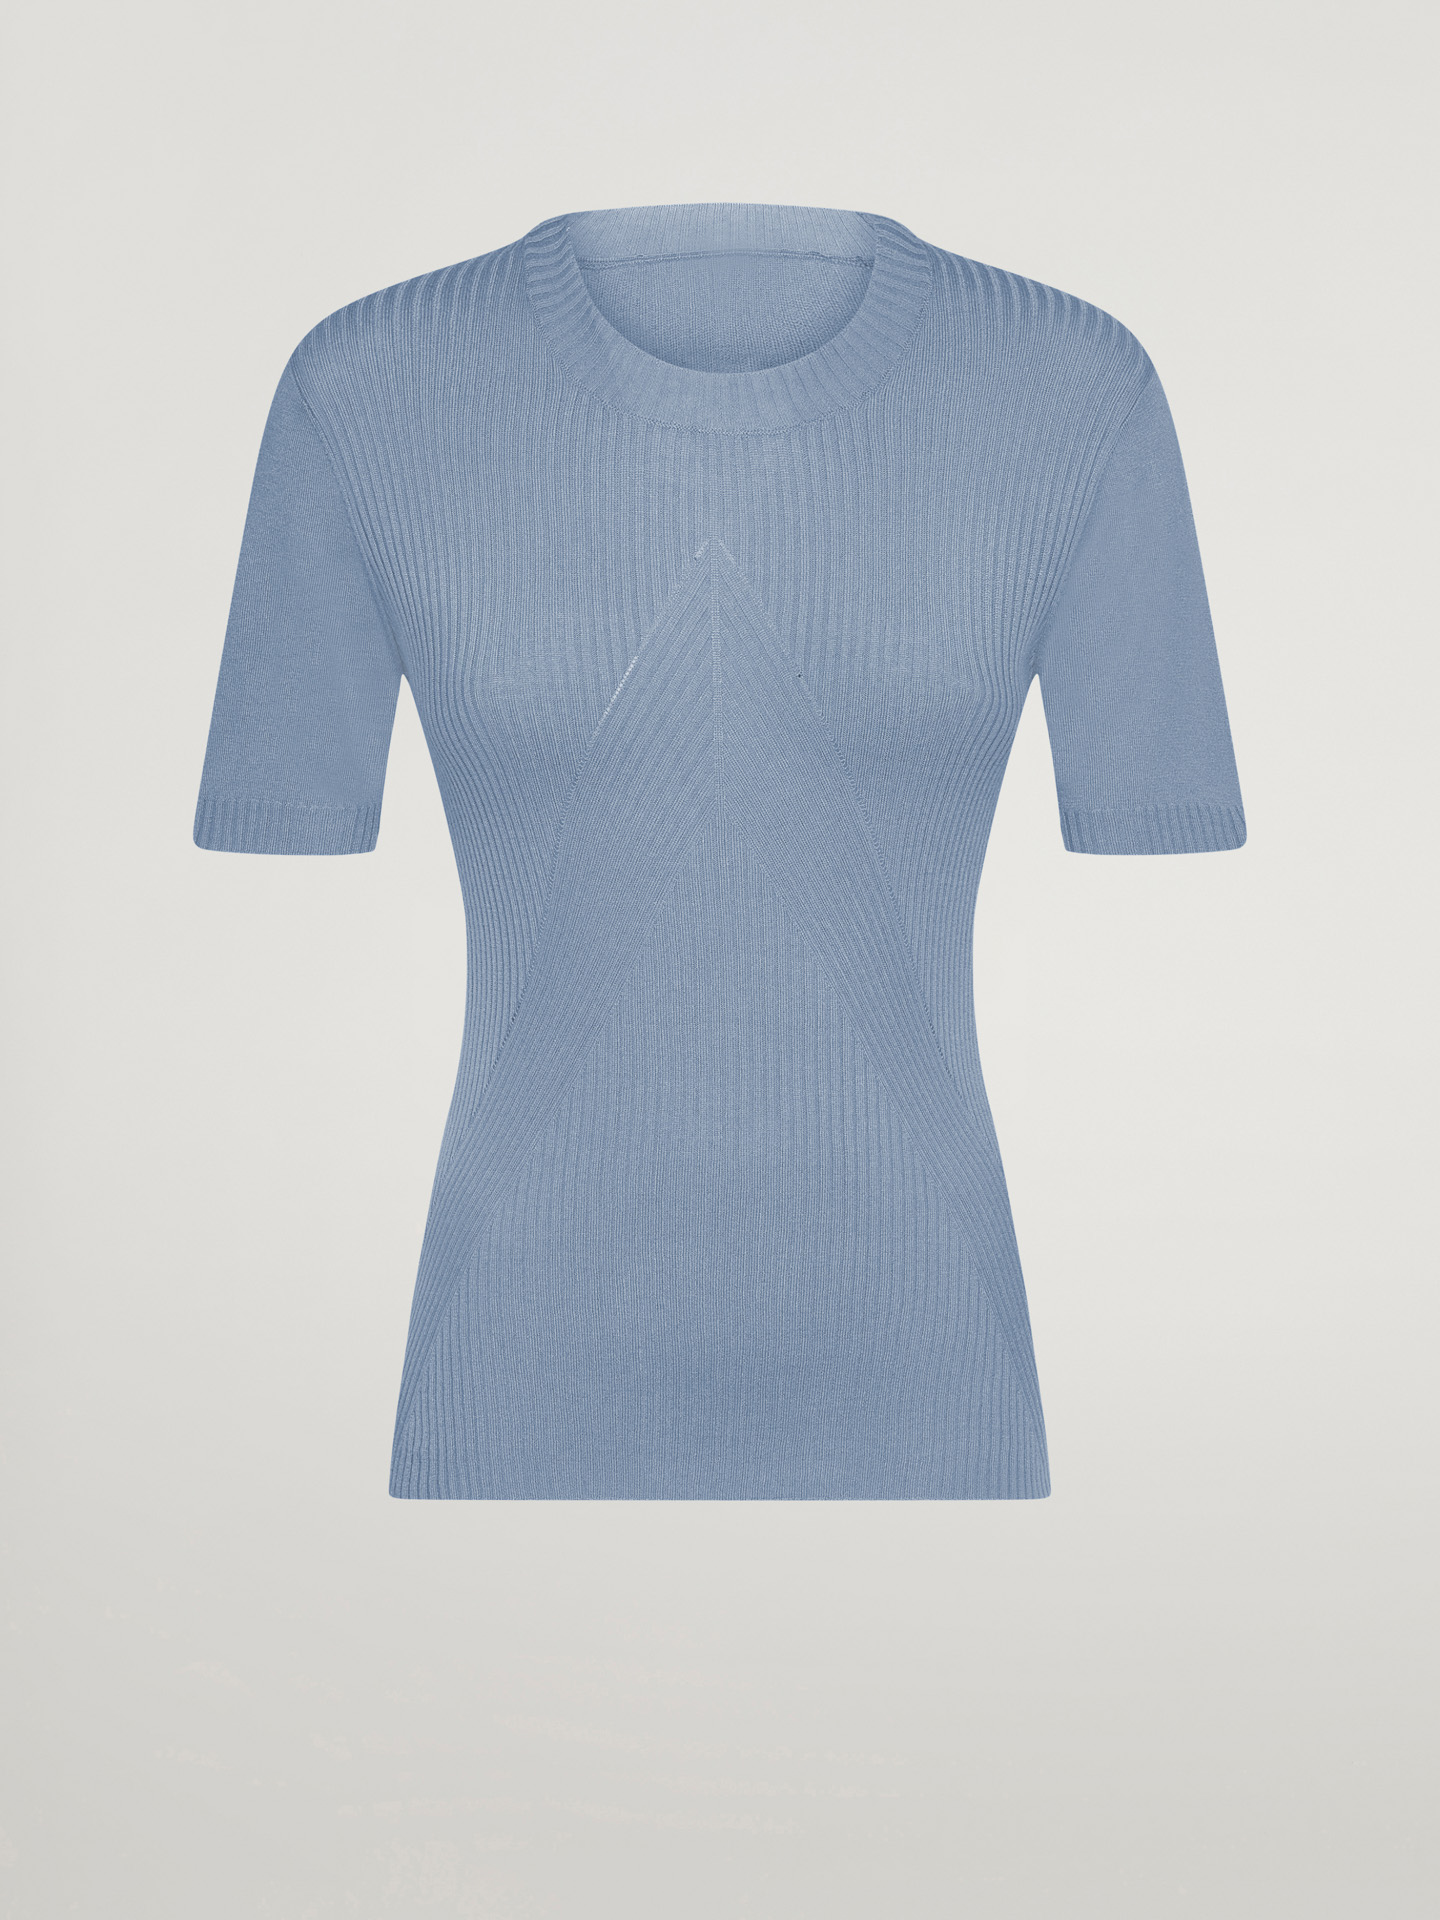 Wolford - Cashmere Top Short Sleeves, Frau, tempest, Größe: XS günstig online kaufen